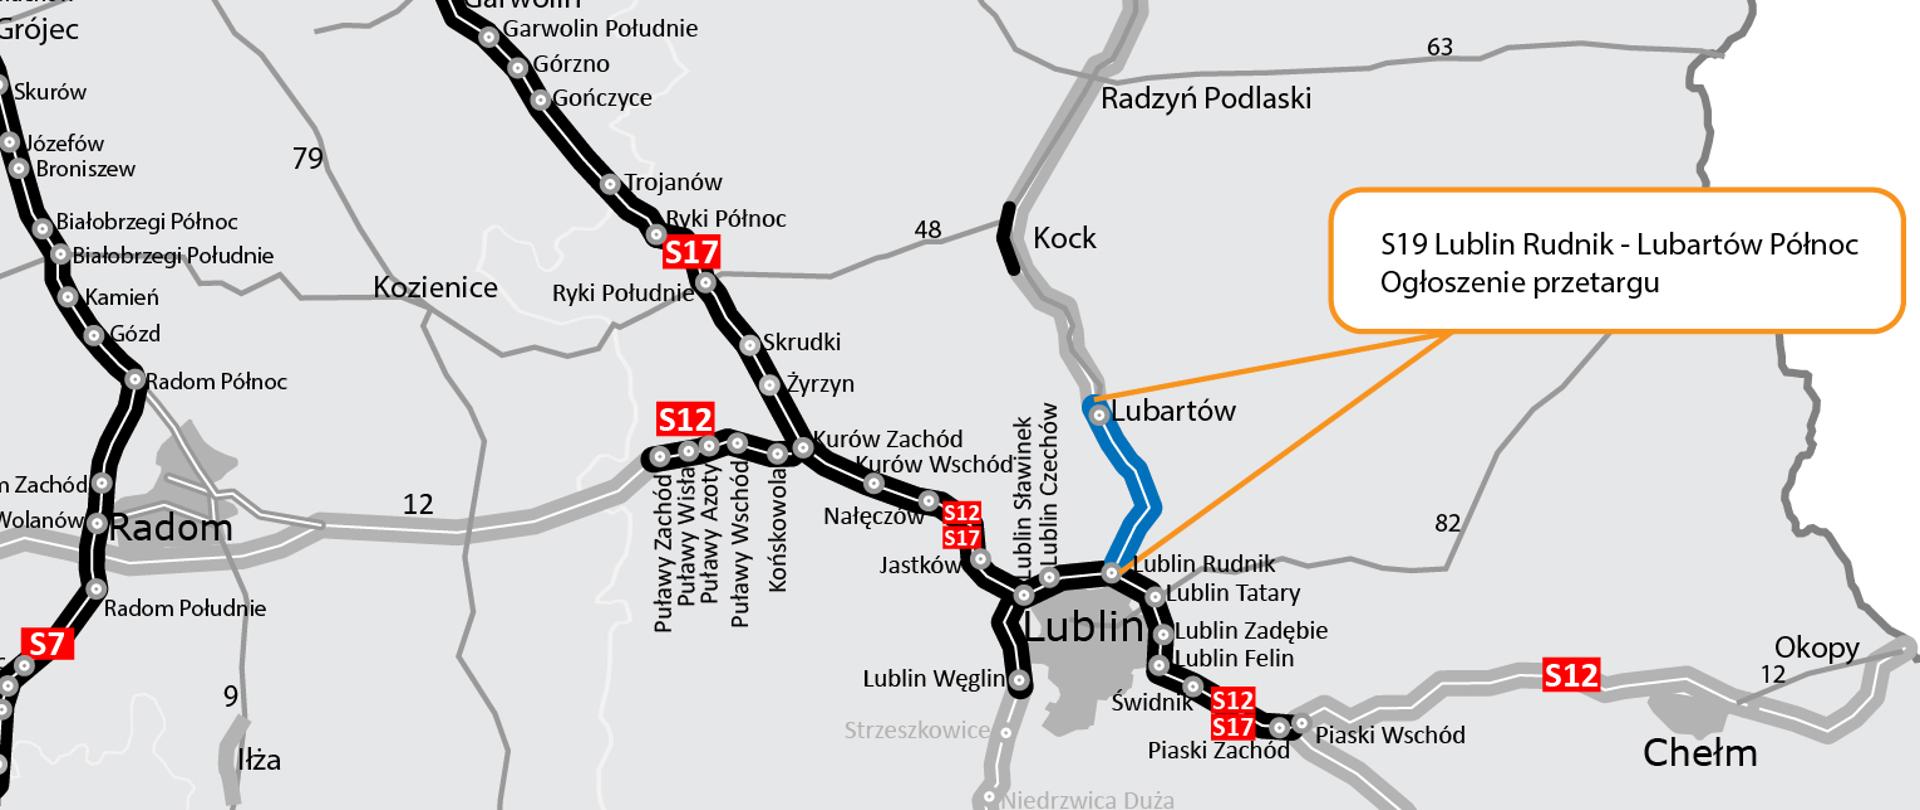 Infografika informuje, że GDDKiA rozpoczyna procedurę przetargową na wyłonienie wykonawcy, który zaprojektuje i wybuduje drogę ekspresową S19 między Lublinem a Lubartowem